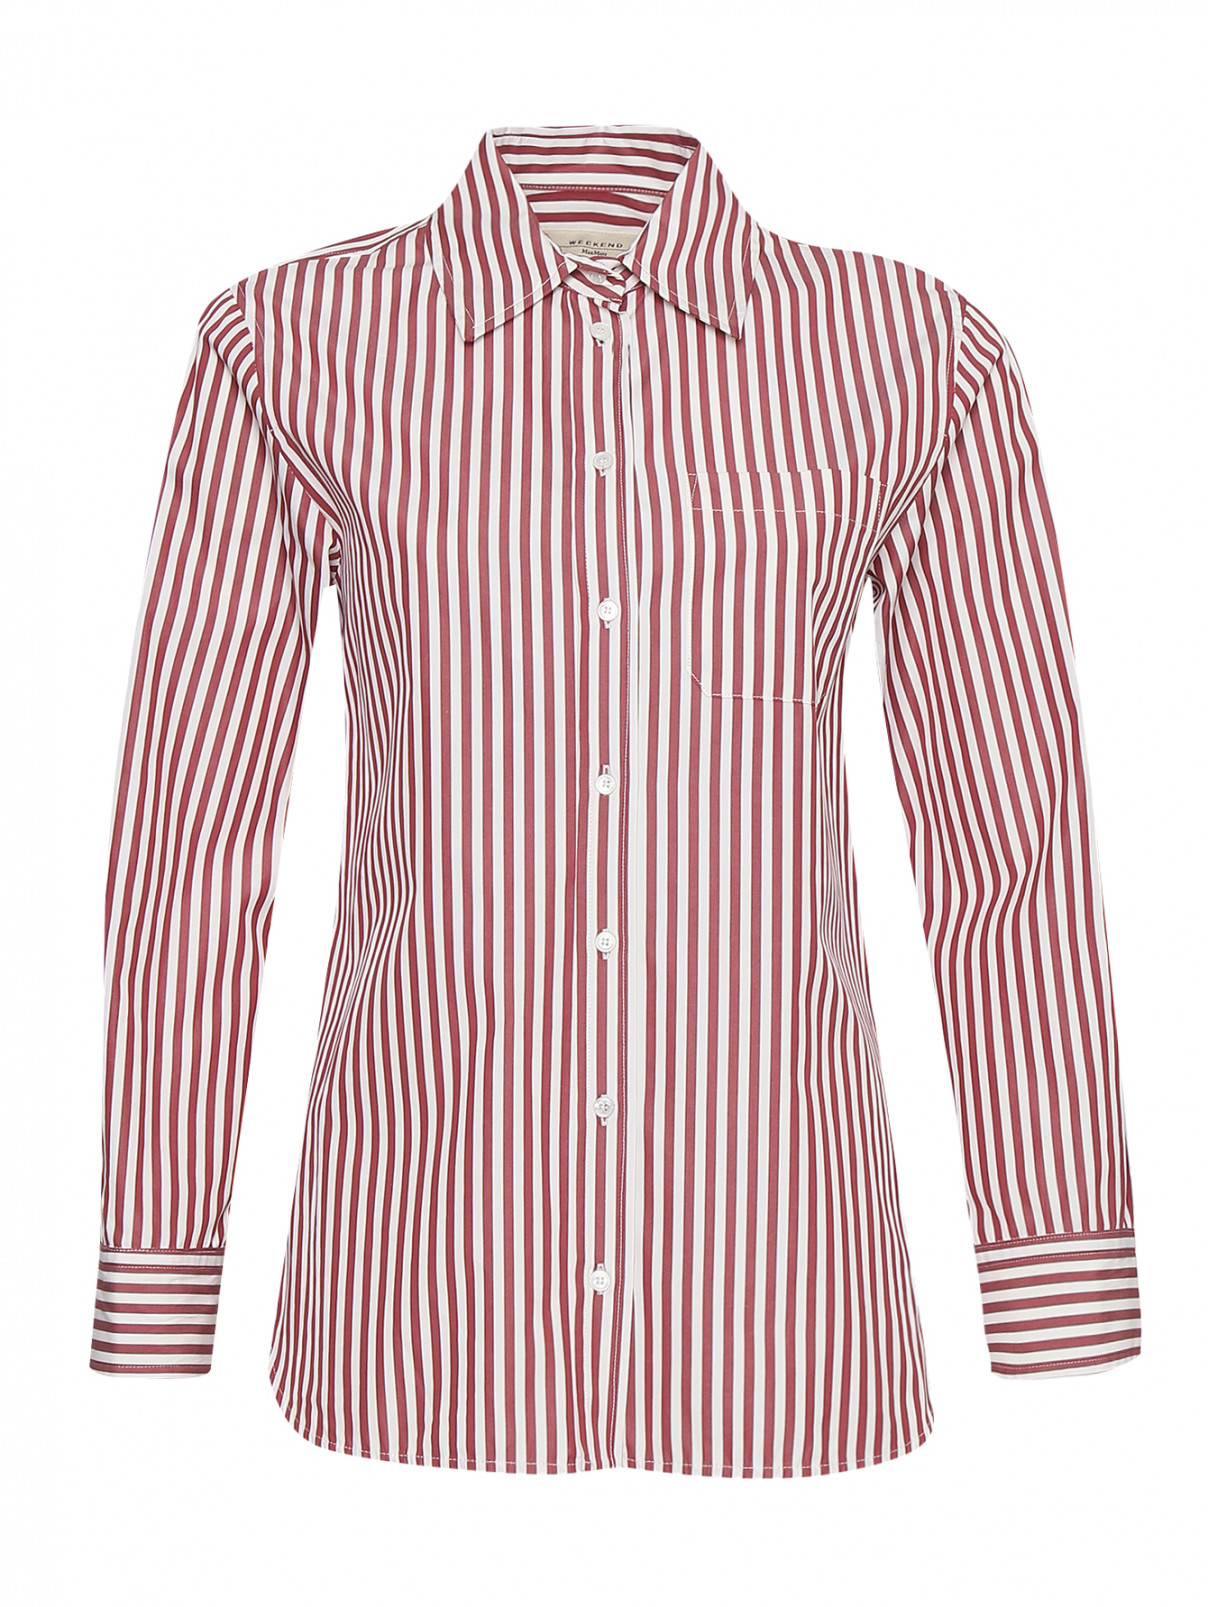 Рубашка из хлопка с узором полоска Weekend Max Mara  –  Общий вид  – Цвет:  Узор